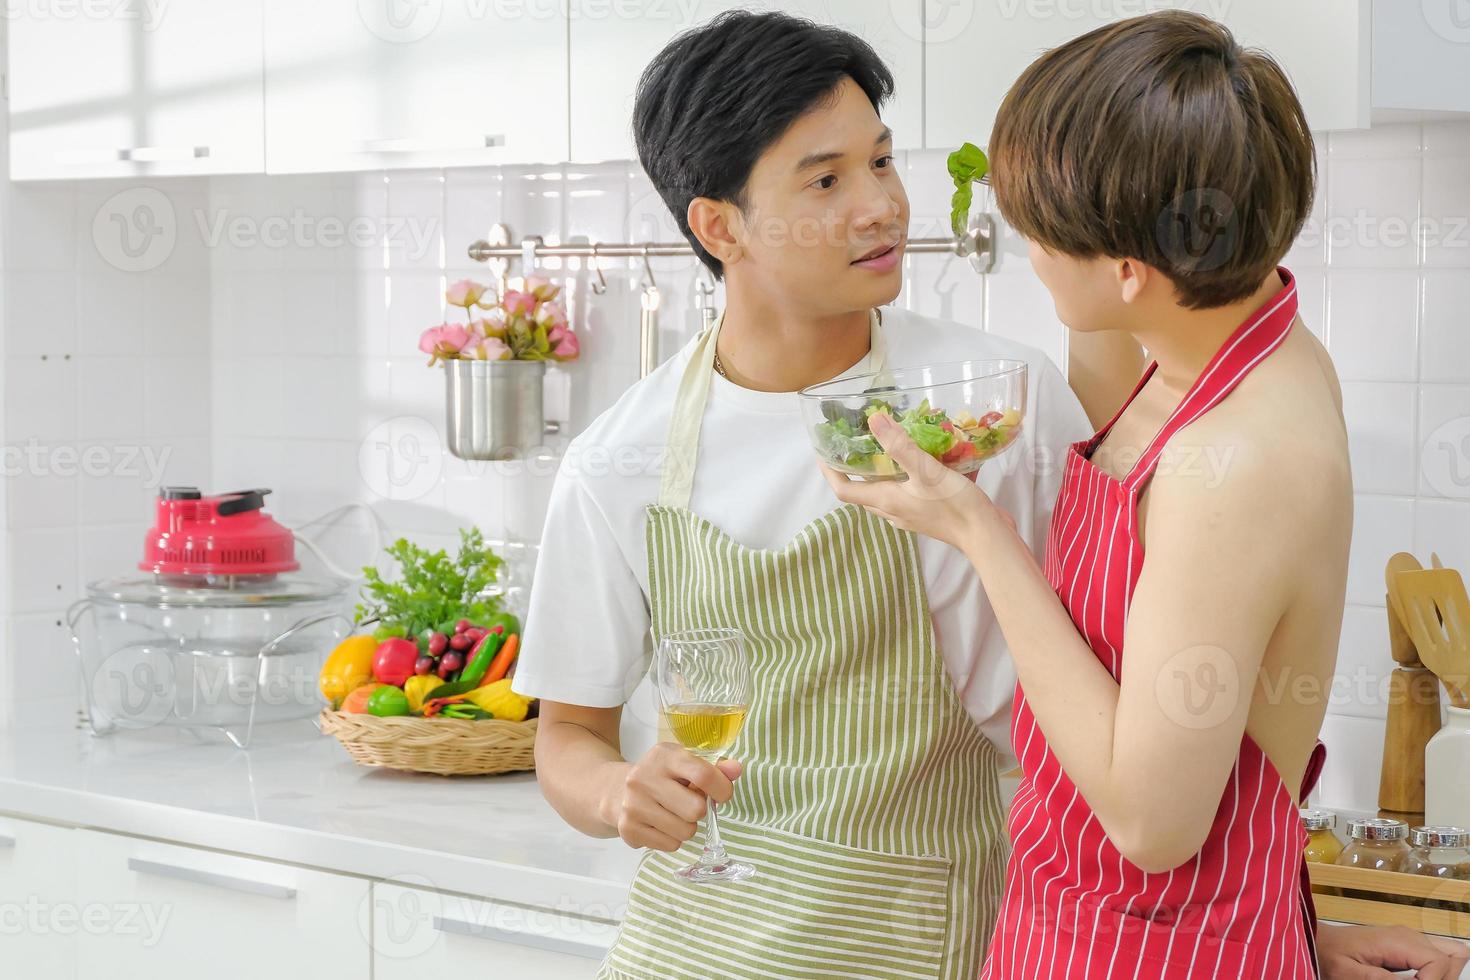 jong lgbt paar huiselijk leven concept. intiem Aziatisch jong lgbt mannetje paar genieten aan het eten salade met wijn glas in hand- en hebben romantisch momenten samen in de keuken Bij huis. selectief focus. foto